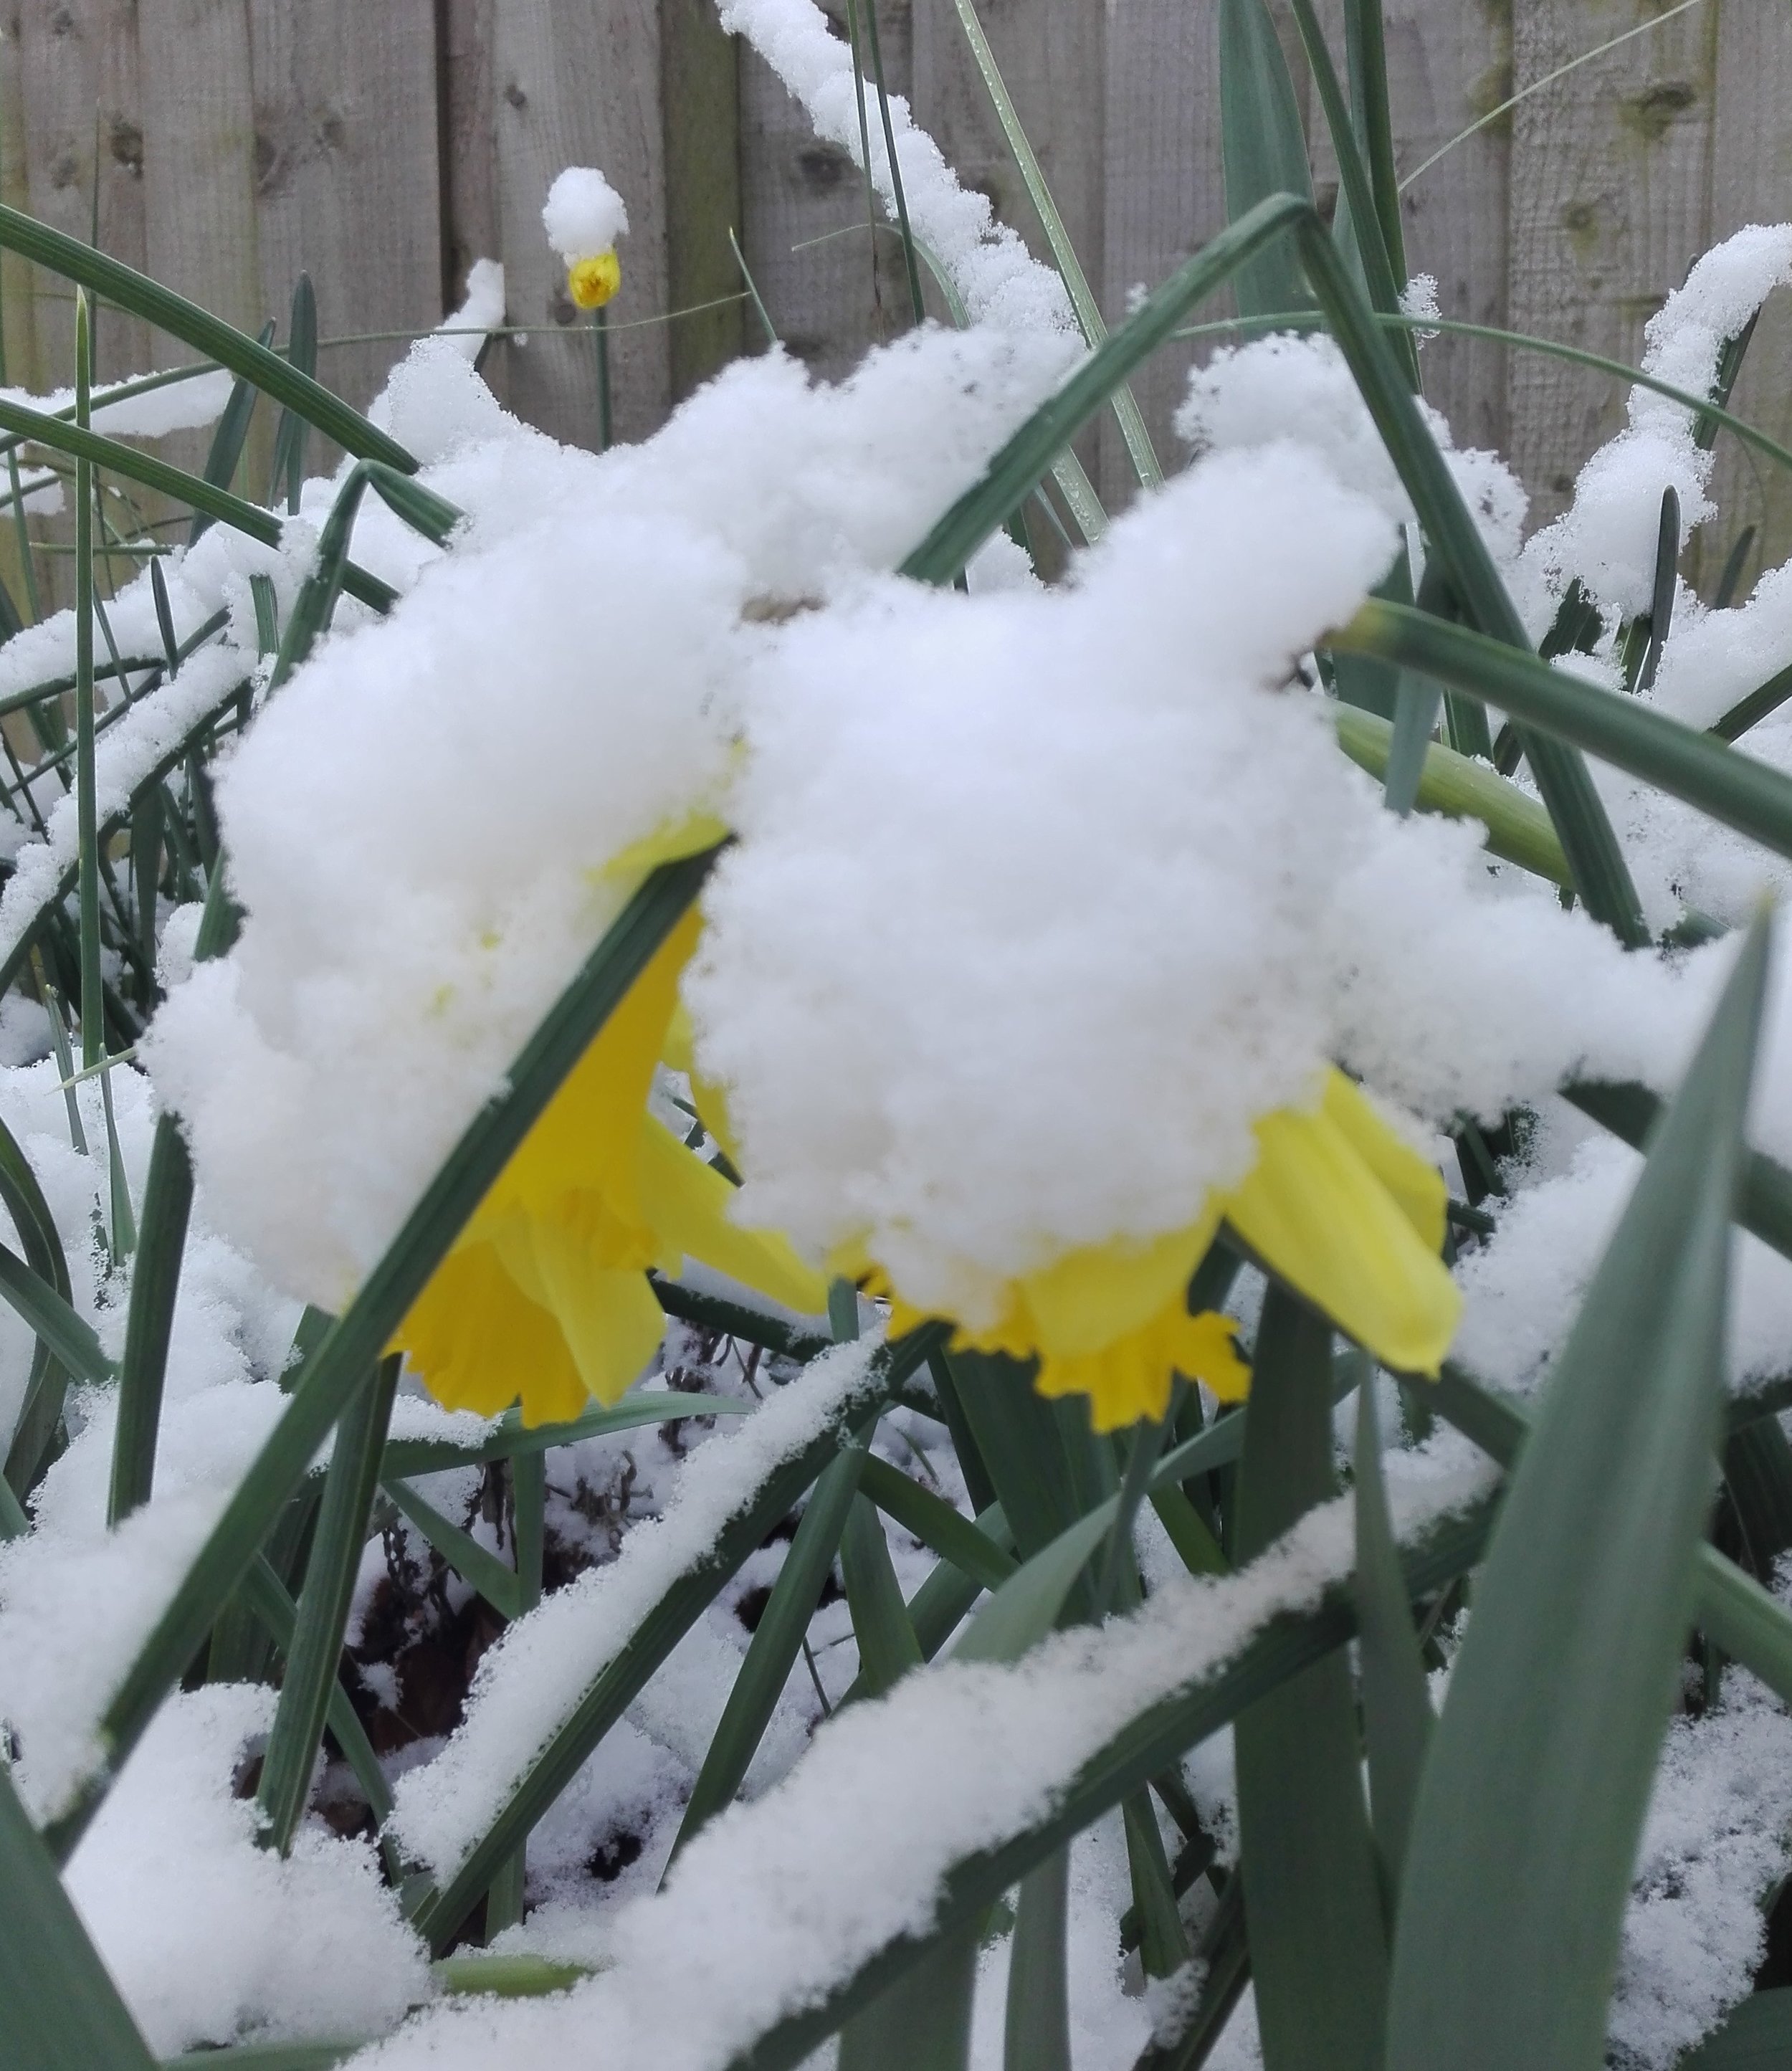 Snowy daffodils